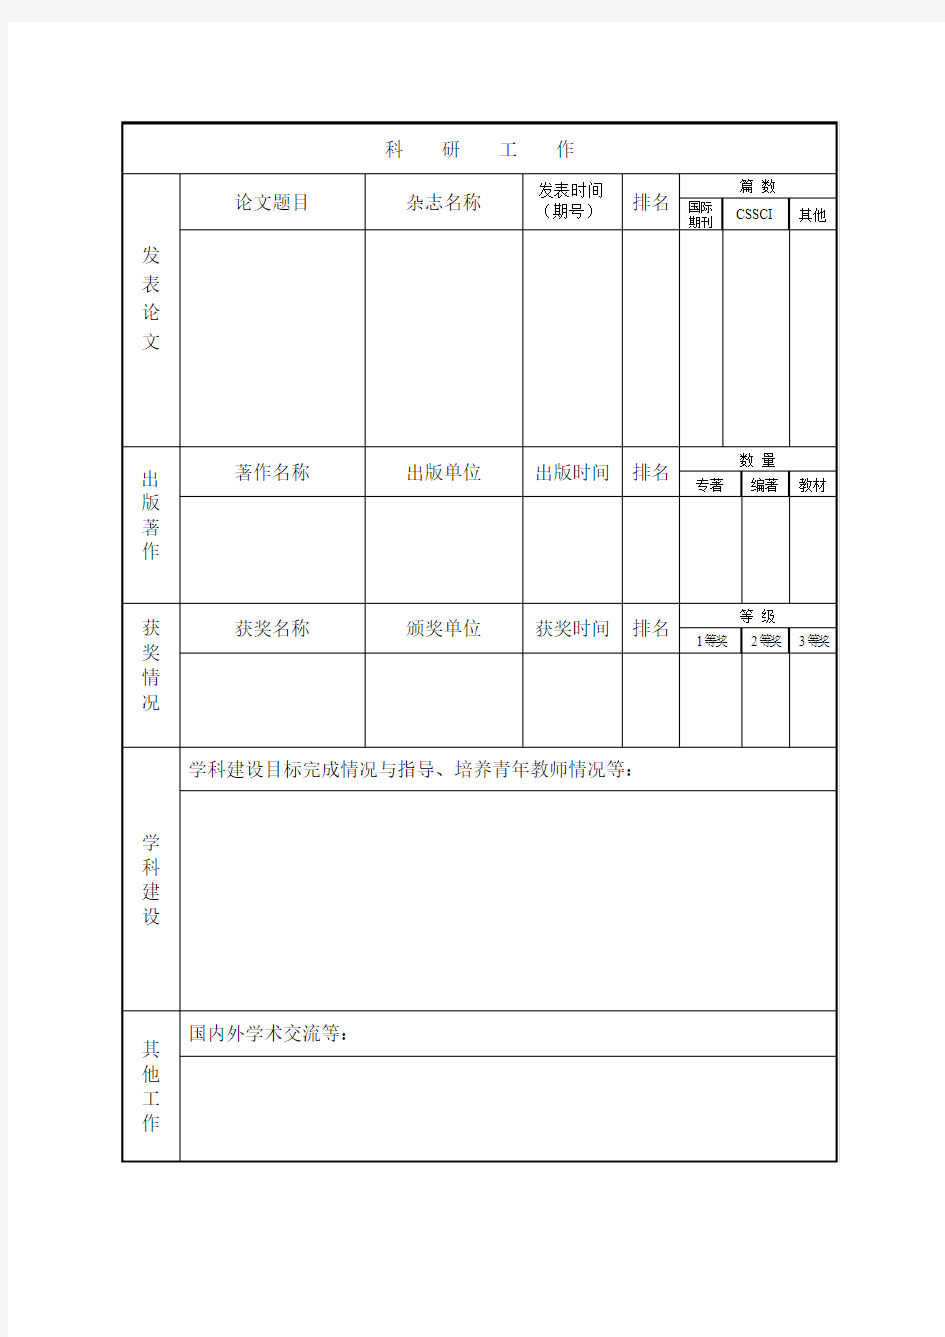 复旦大学特聘教授考核表-上海外国语大学